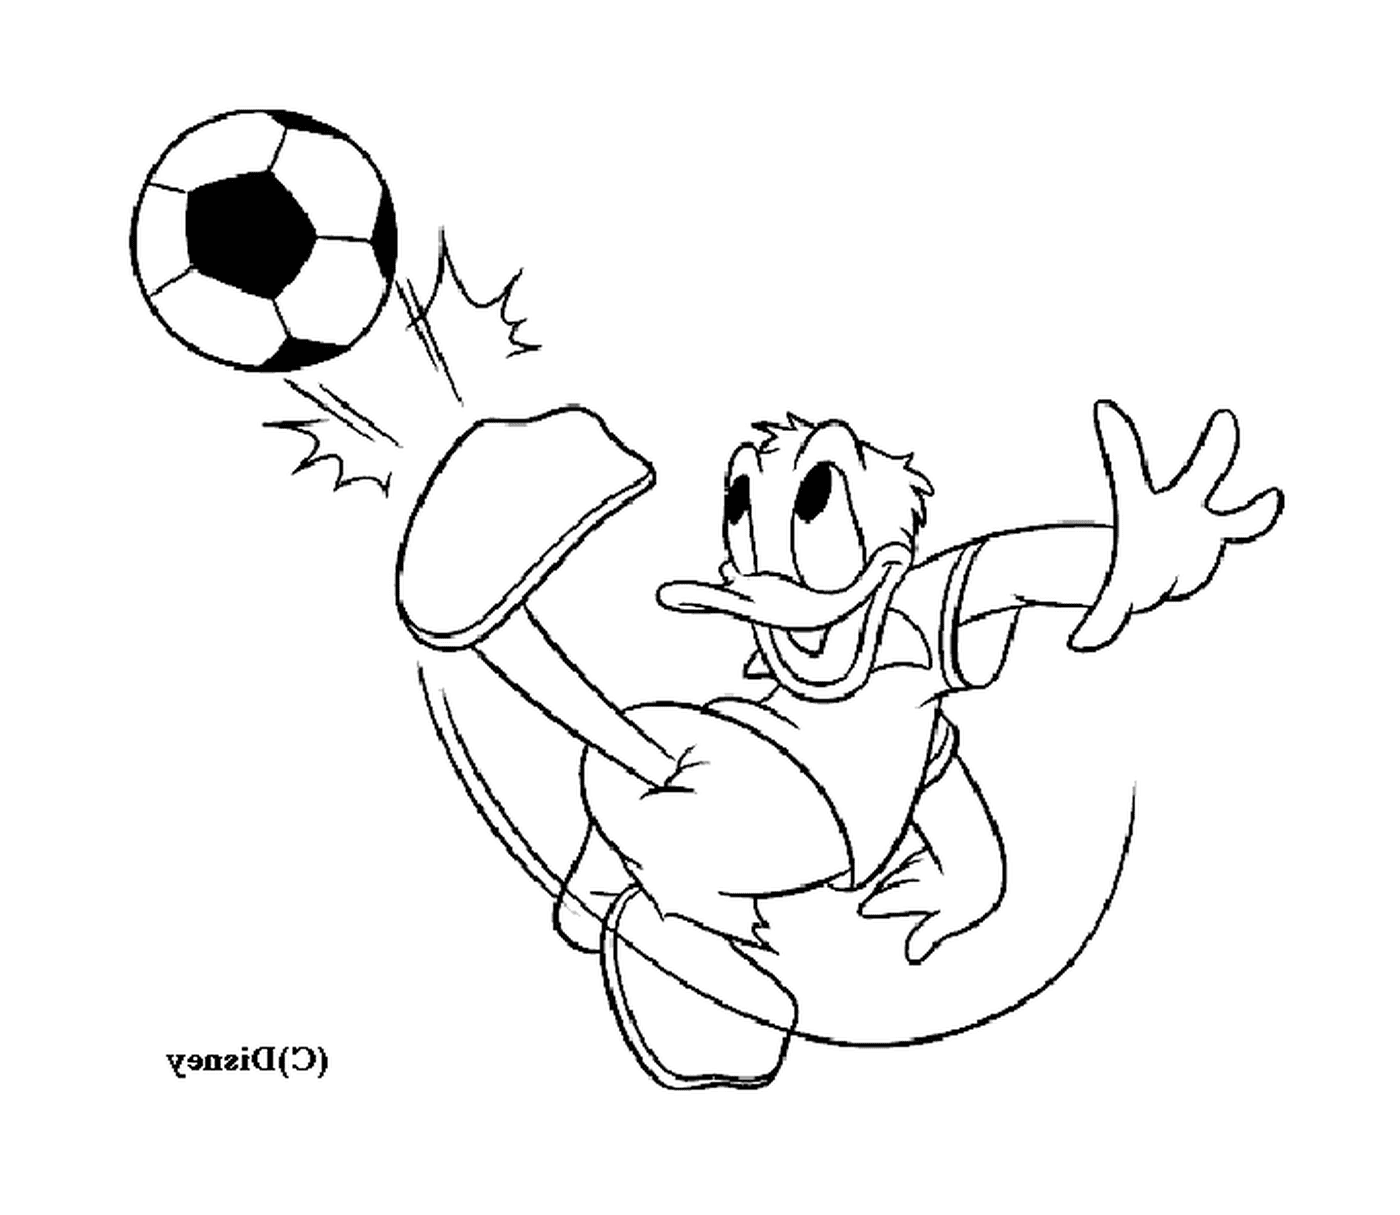  Donald juega al fútbol con entusiasmo 